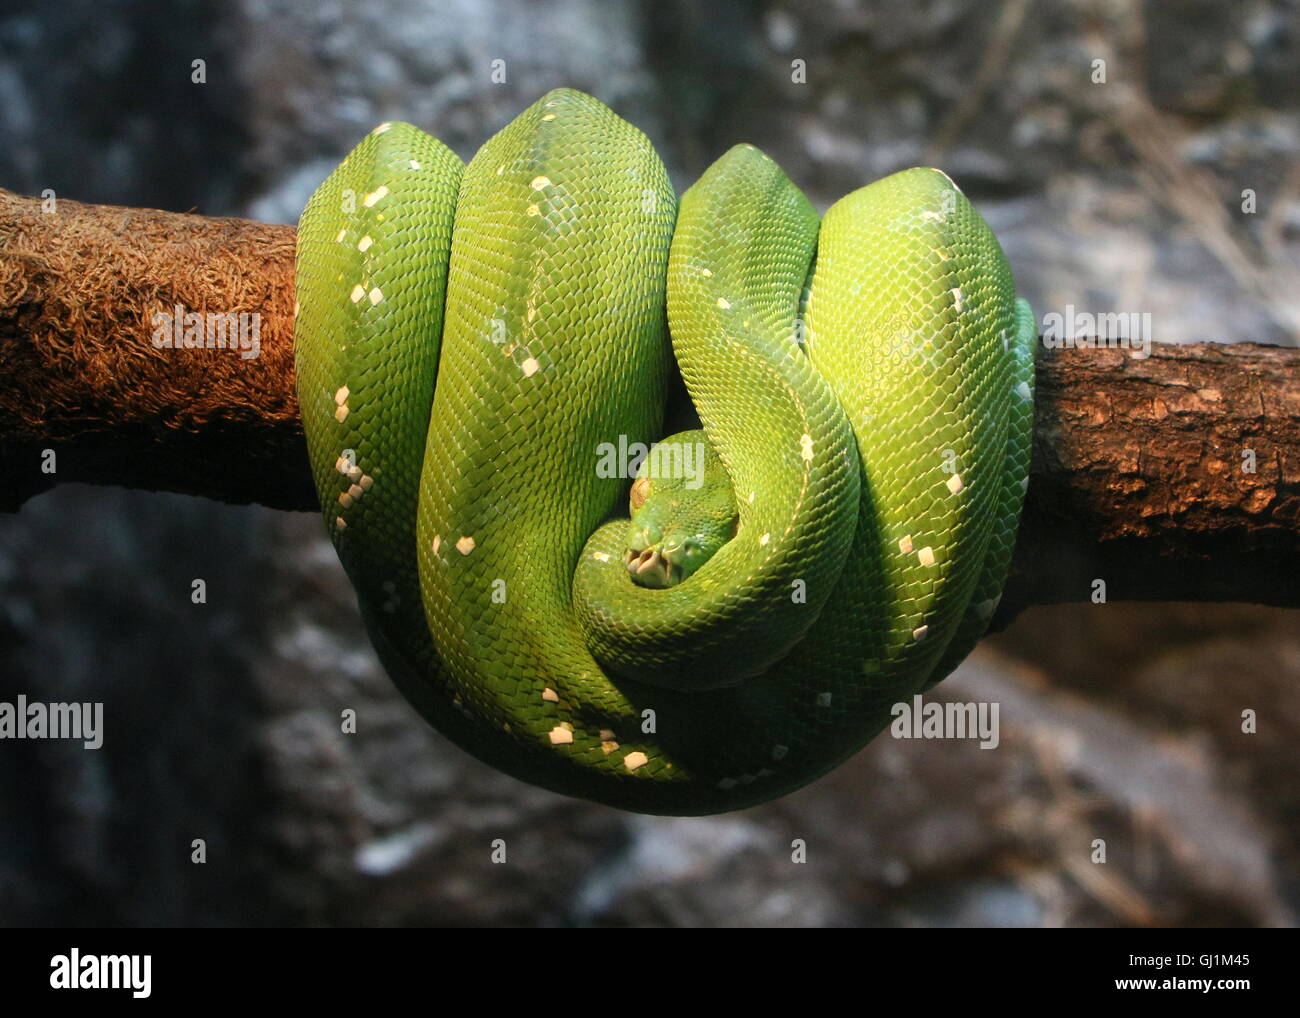 L'arbre vert de l'Asie du Sud-Est ou python Morelia viridis Chondro (serpent) enroulée autour d'une branche, face à l'appareil photo Banque D'Images